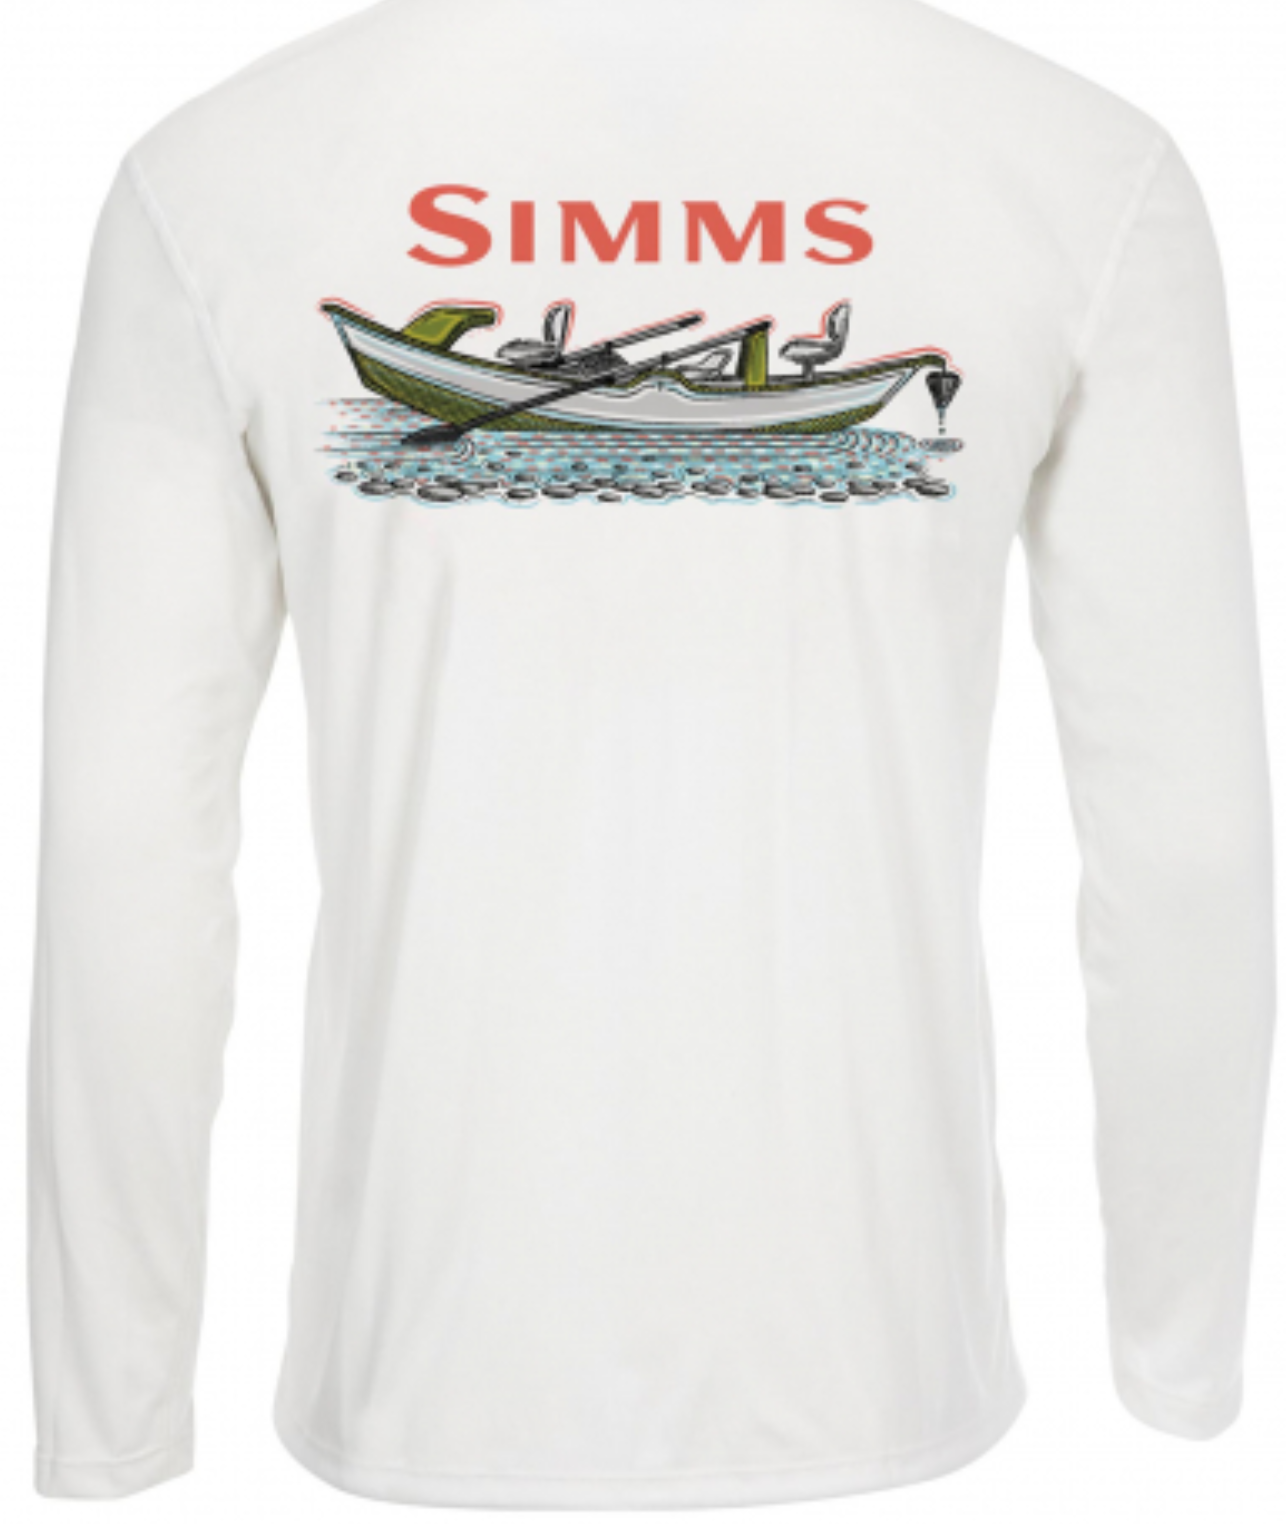 Simms - M's Solar Tech Tee LS - Drift Outfitters & Fly Shop Online